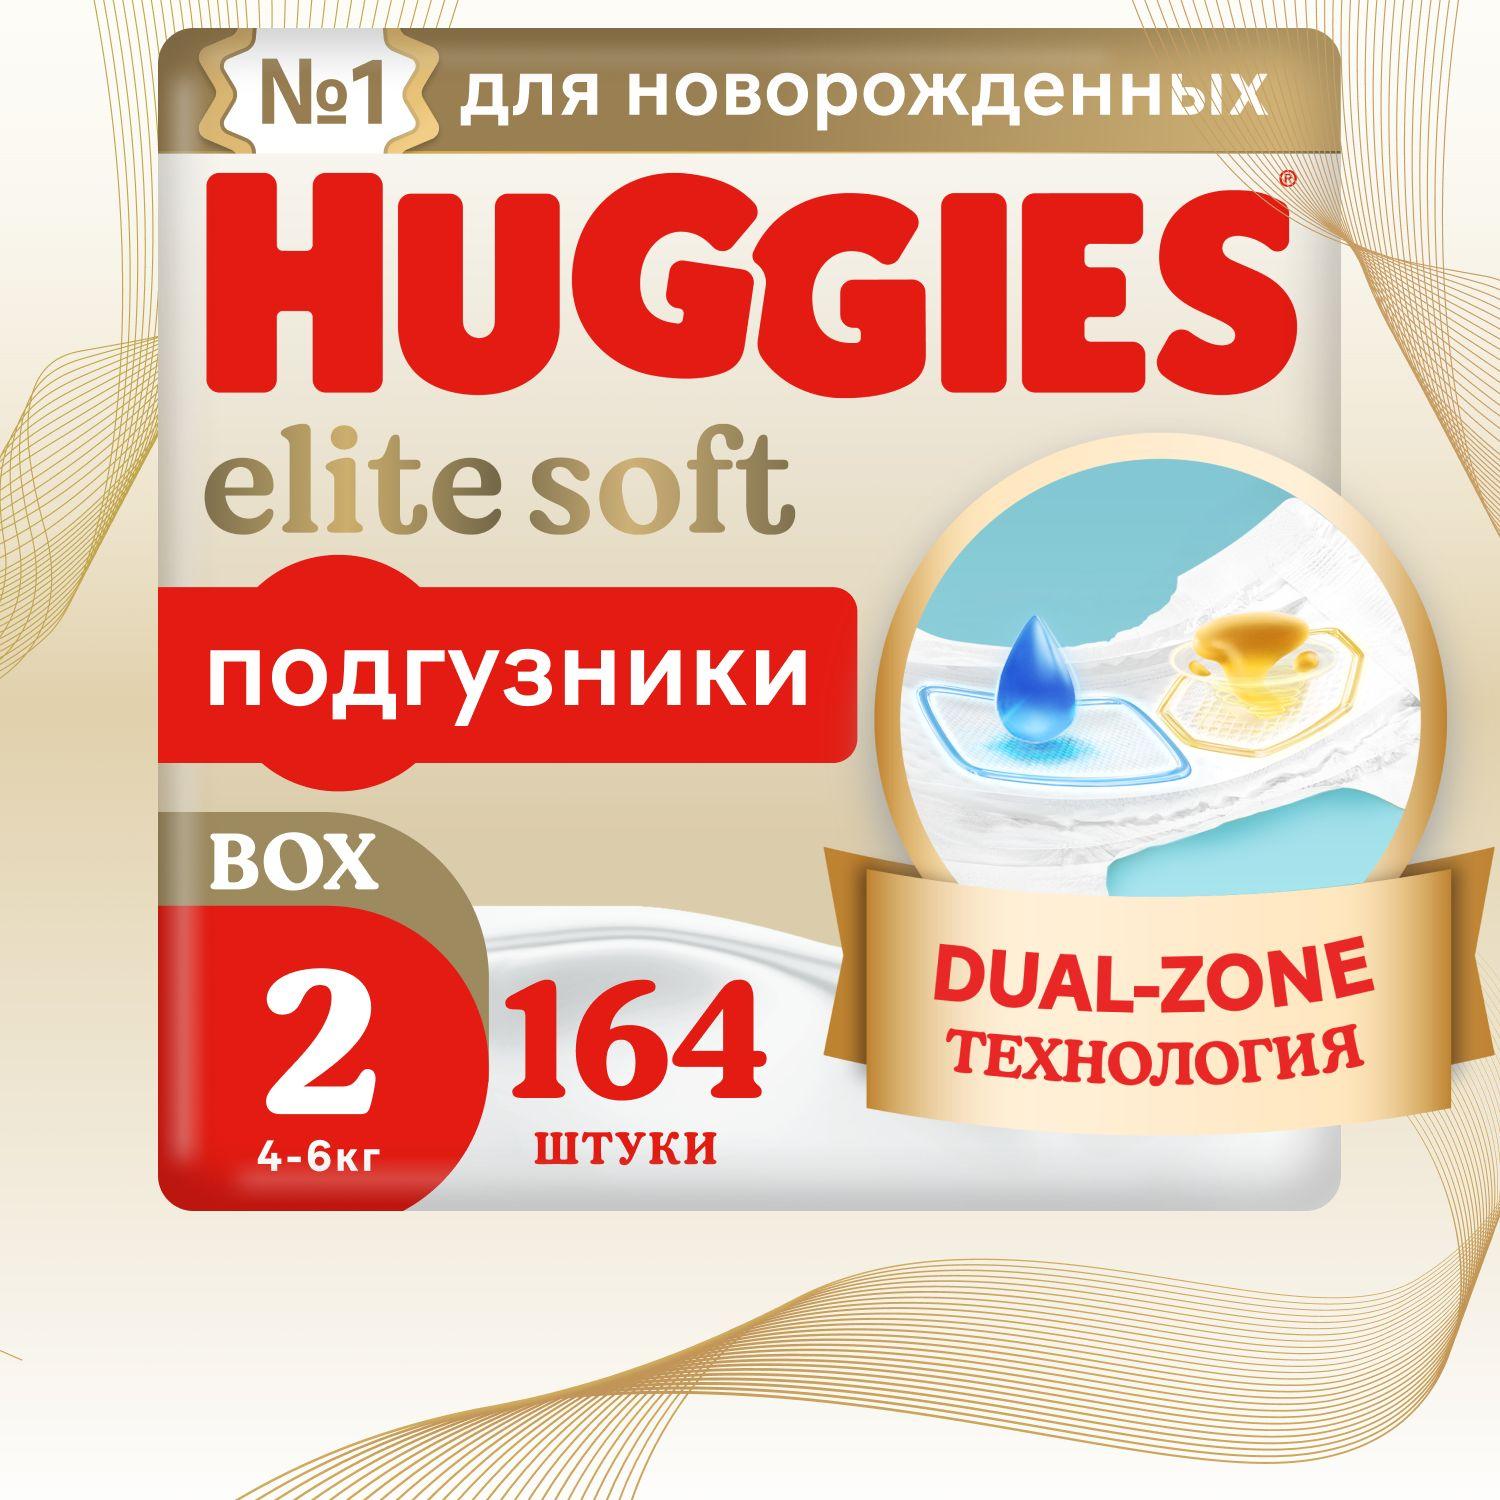 Подгузники для новорожденных  Huggies Elite Soft 2 S размер, 4-6 кг, 164 шт